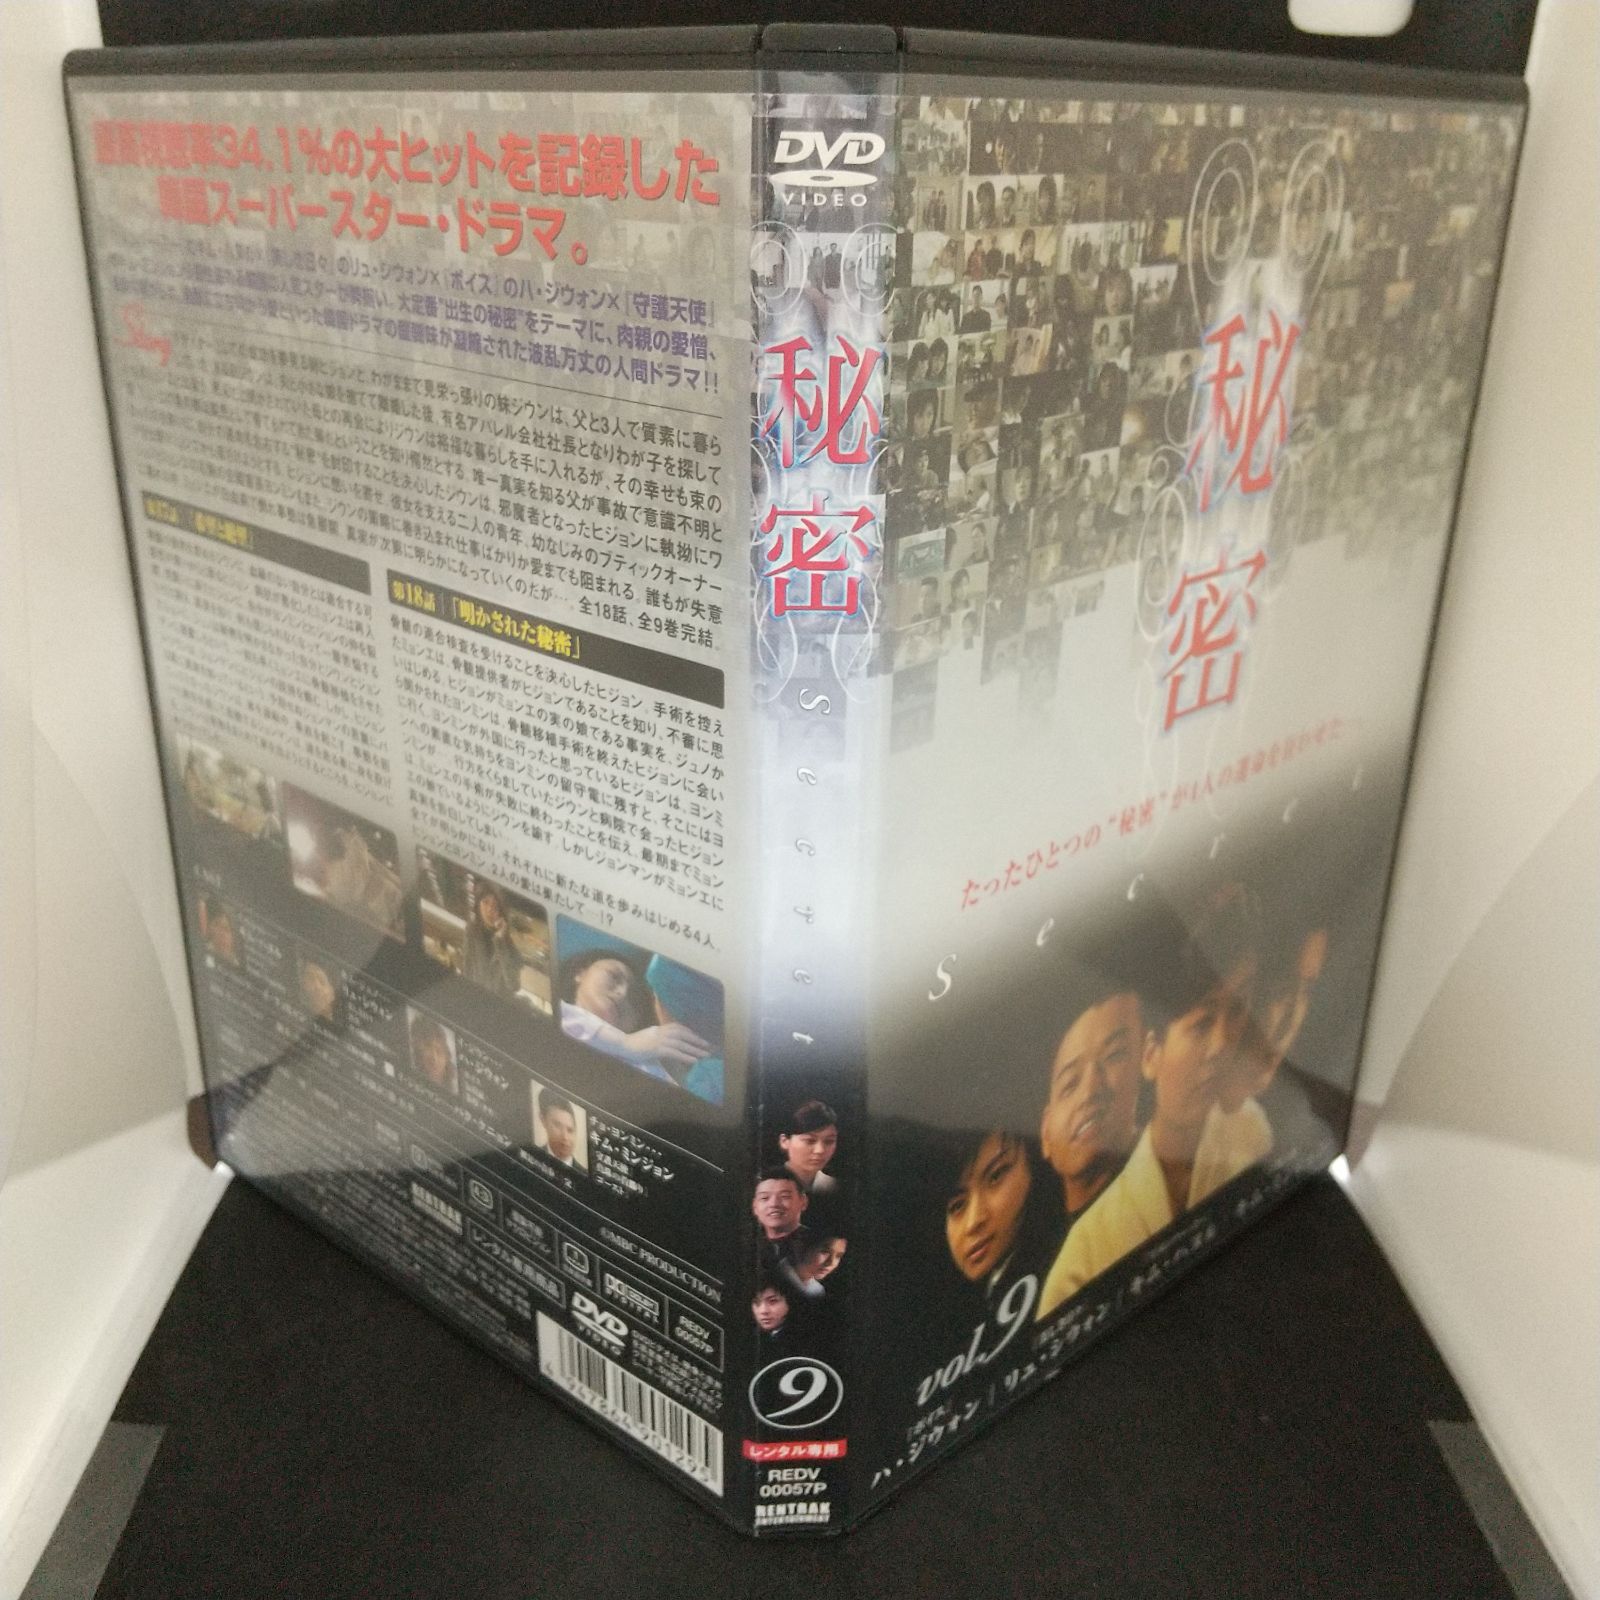 秘密 Secret 1～9 (全9枚)(全巻セットDVD) [字幕]｜DVD [レンタル落ち] [DVD] tf8su2k